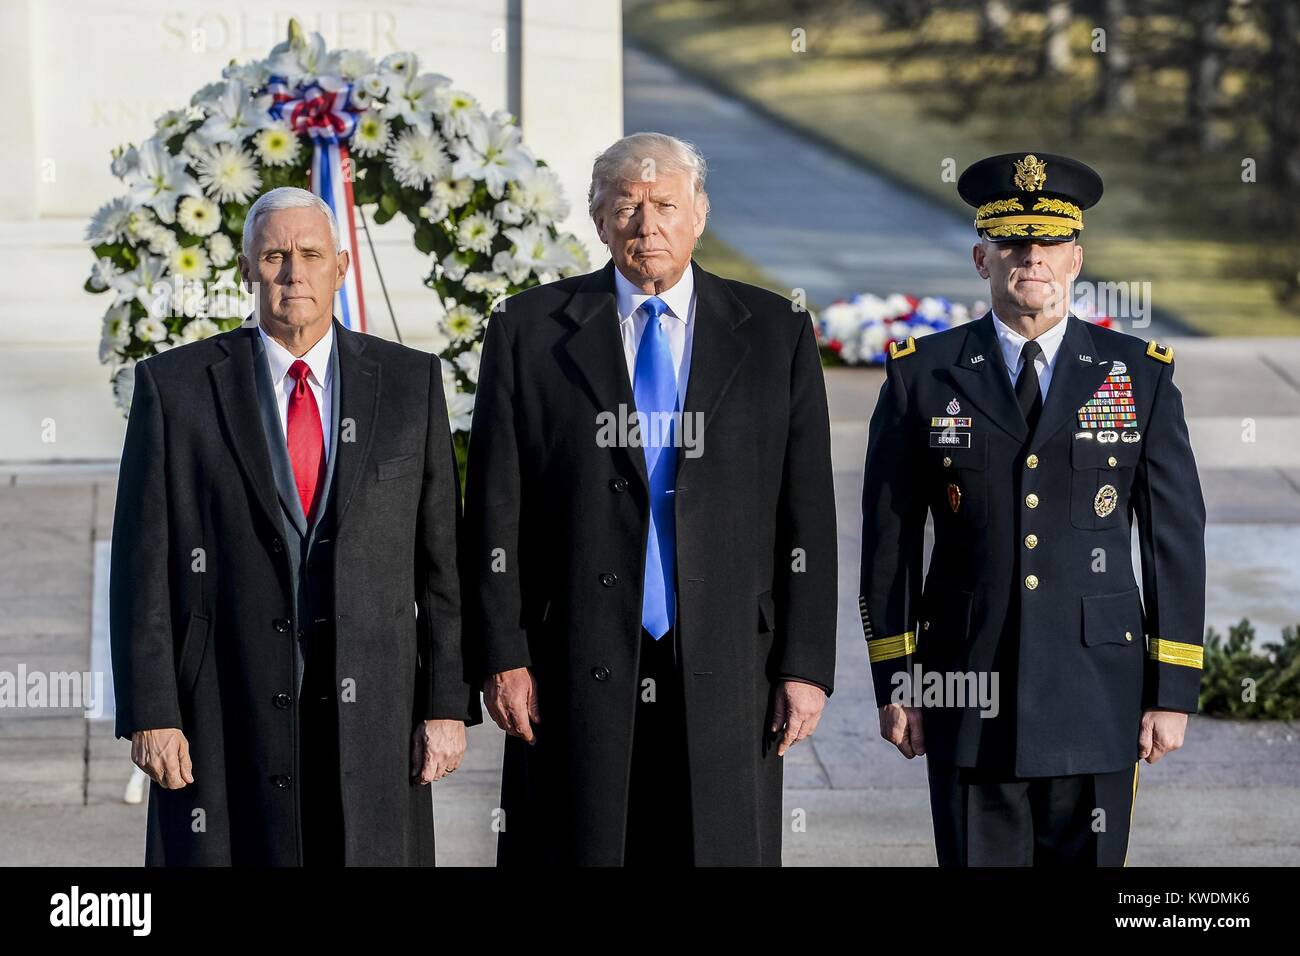 Präsident elect Donald Trump, VP-Präsidenten Michael Pence, und die Armee Generalmajor Bradley Becker. Am 19.01.2017, spielten sie die Eröffnungs-Kranz Zeremonie am Grab des Unbekannten Soldaten in Arlington National Cemetery (BSLOC 2017 18 120) Stockfoto